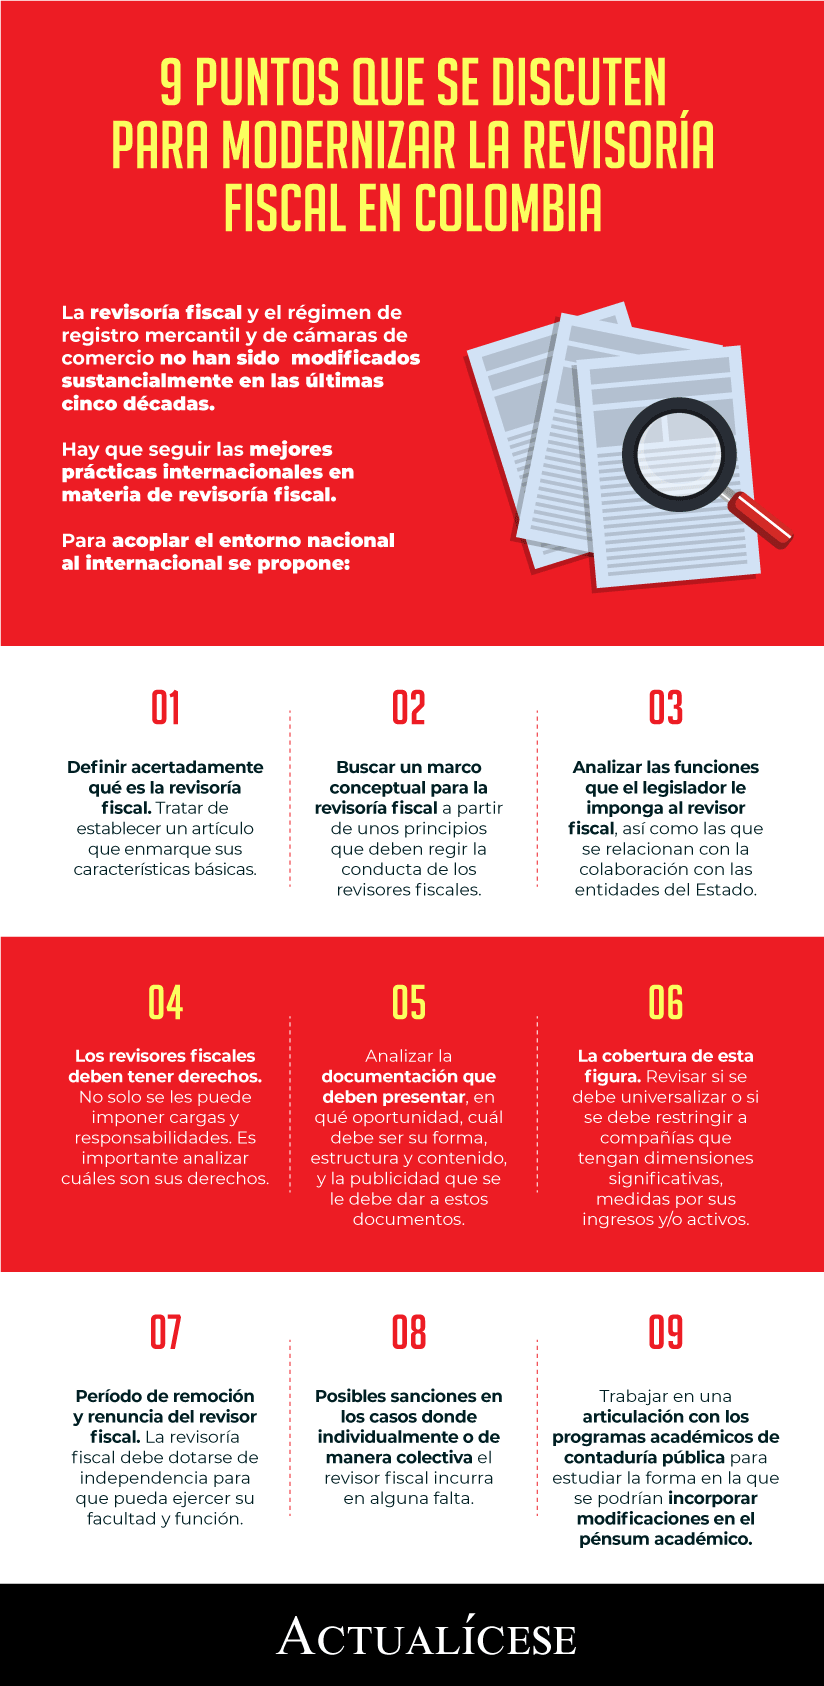 [Infografía] 9 puntos que se discuten para modernizar la revisoría fiscal en Colombia